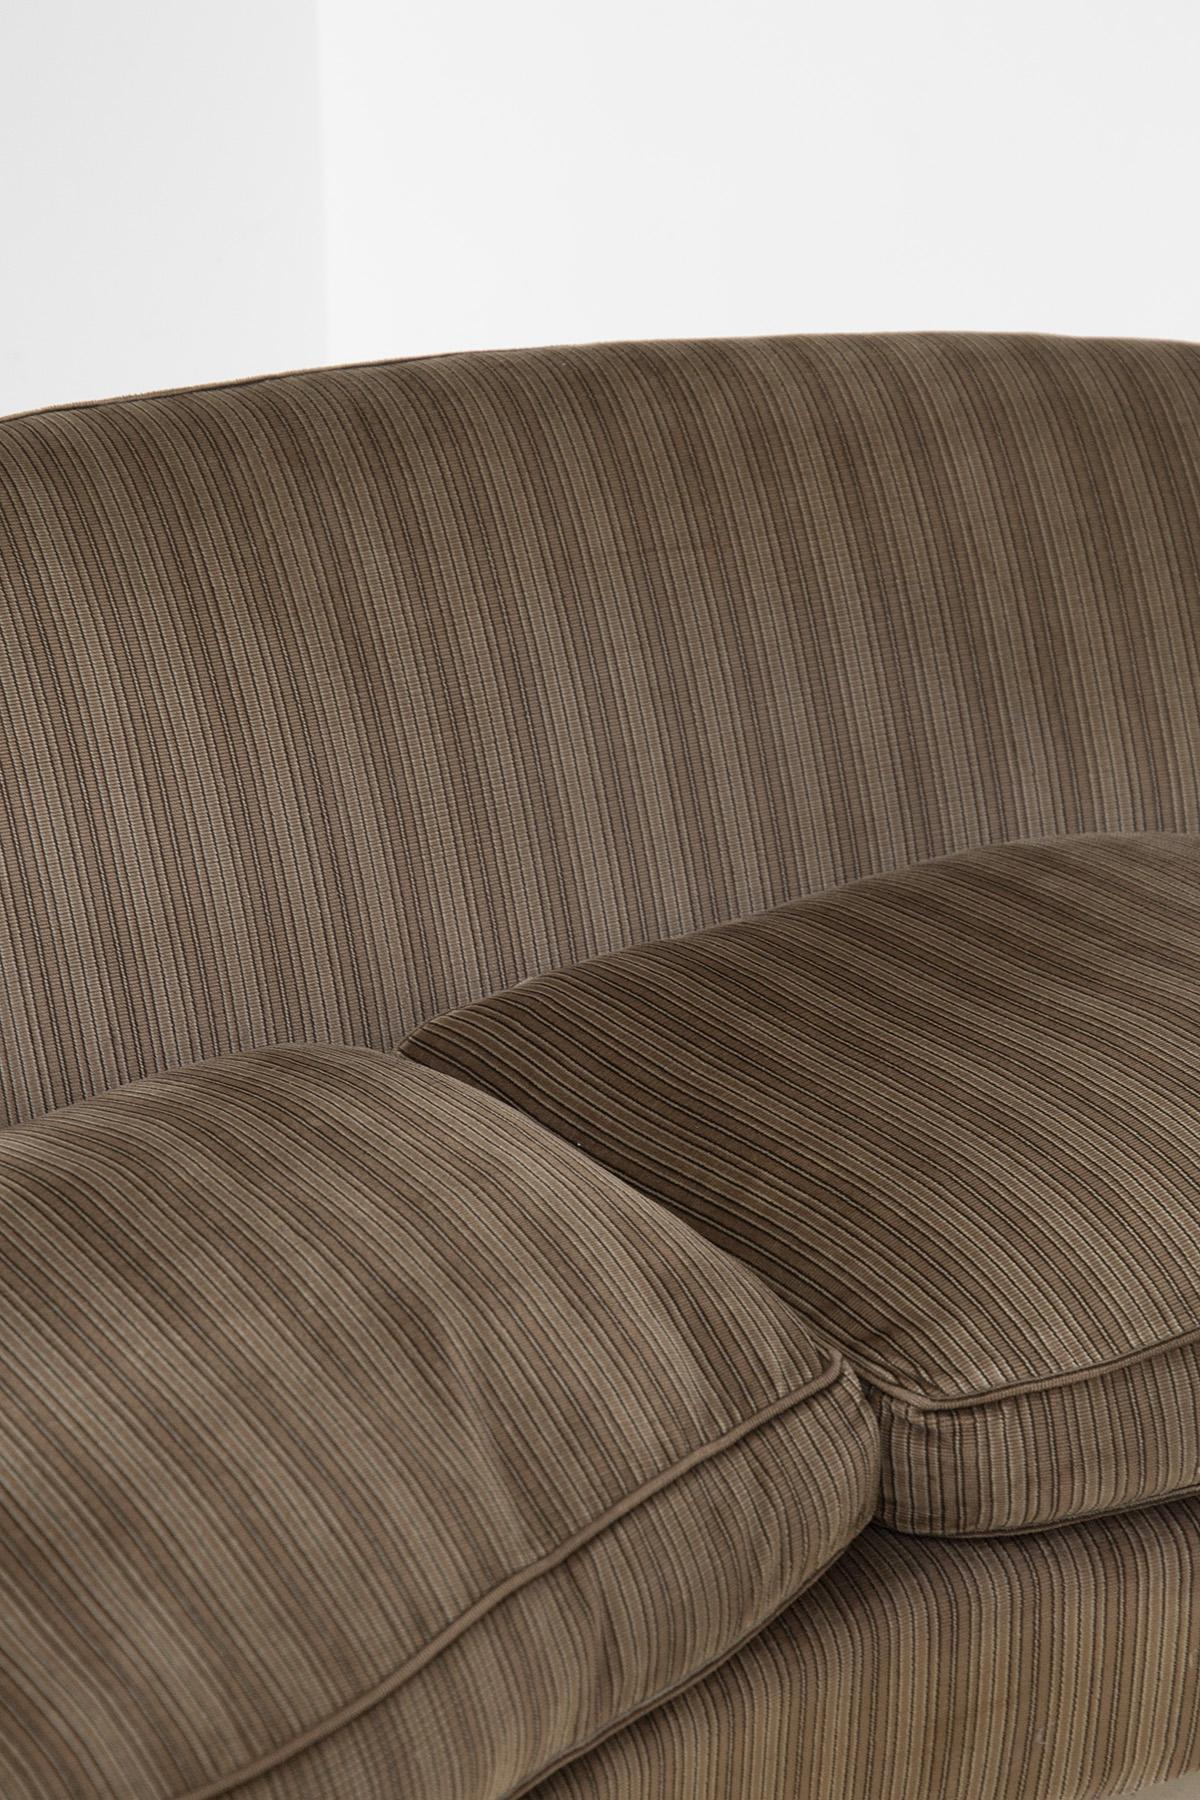 Italian Sofa attributed to Ico Parisi in original fabric For Sale 2